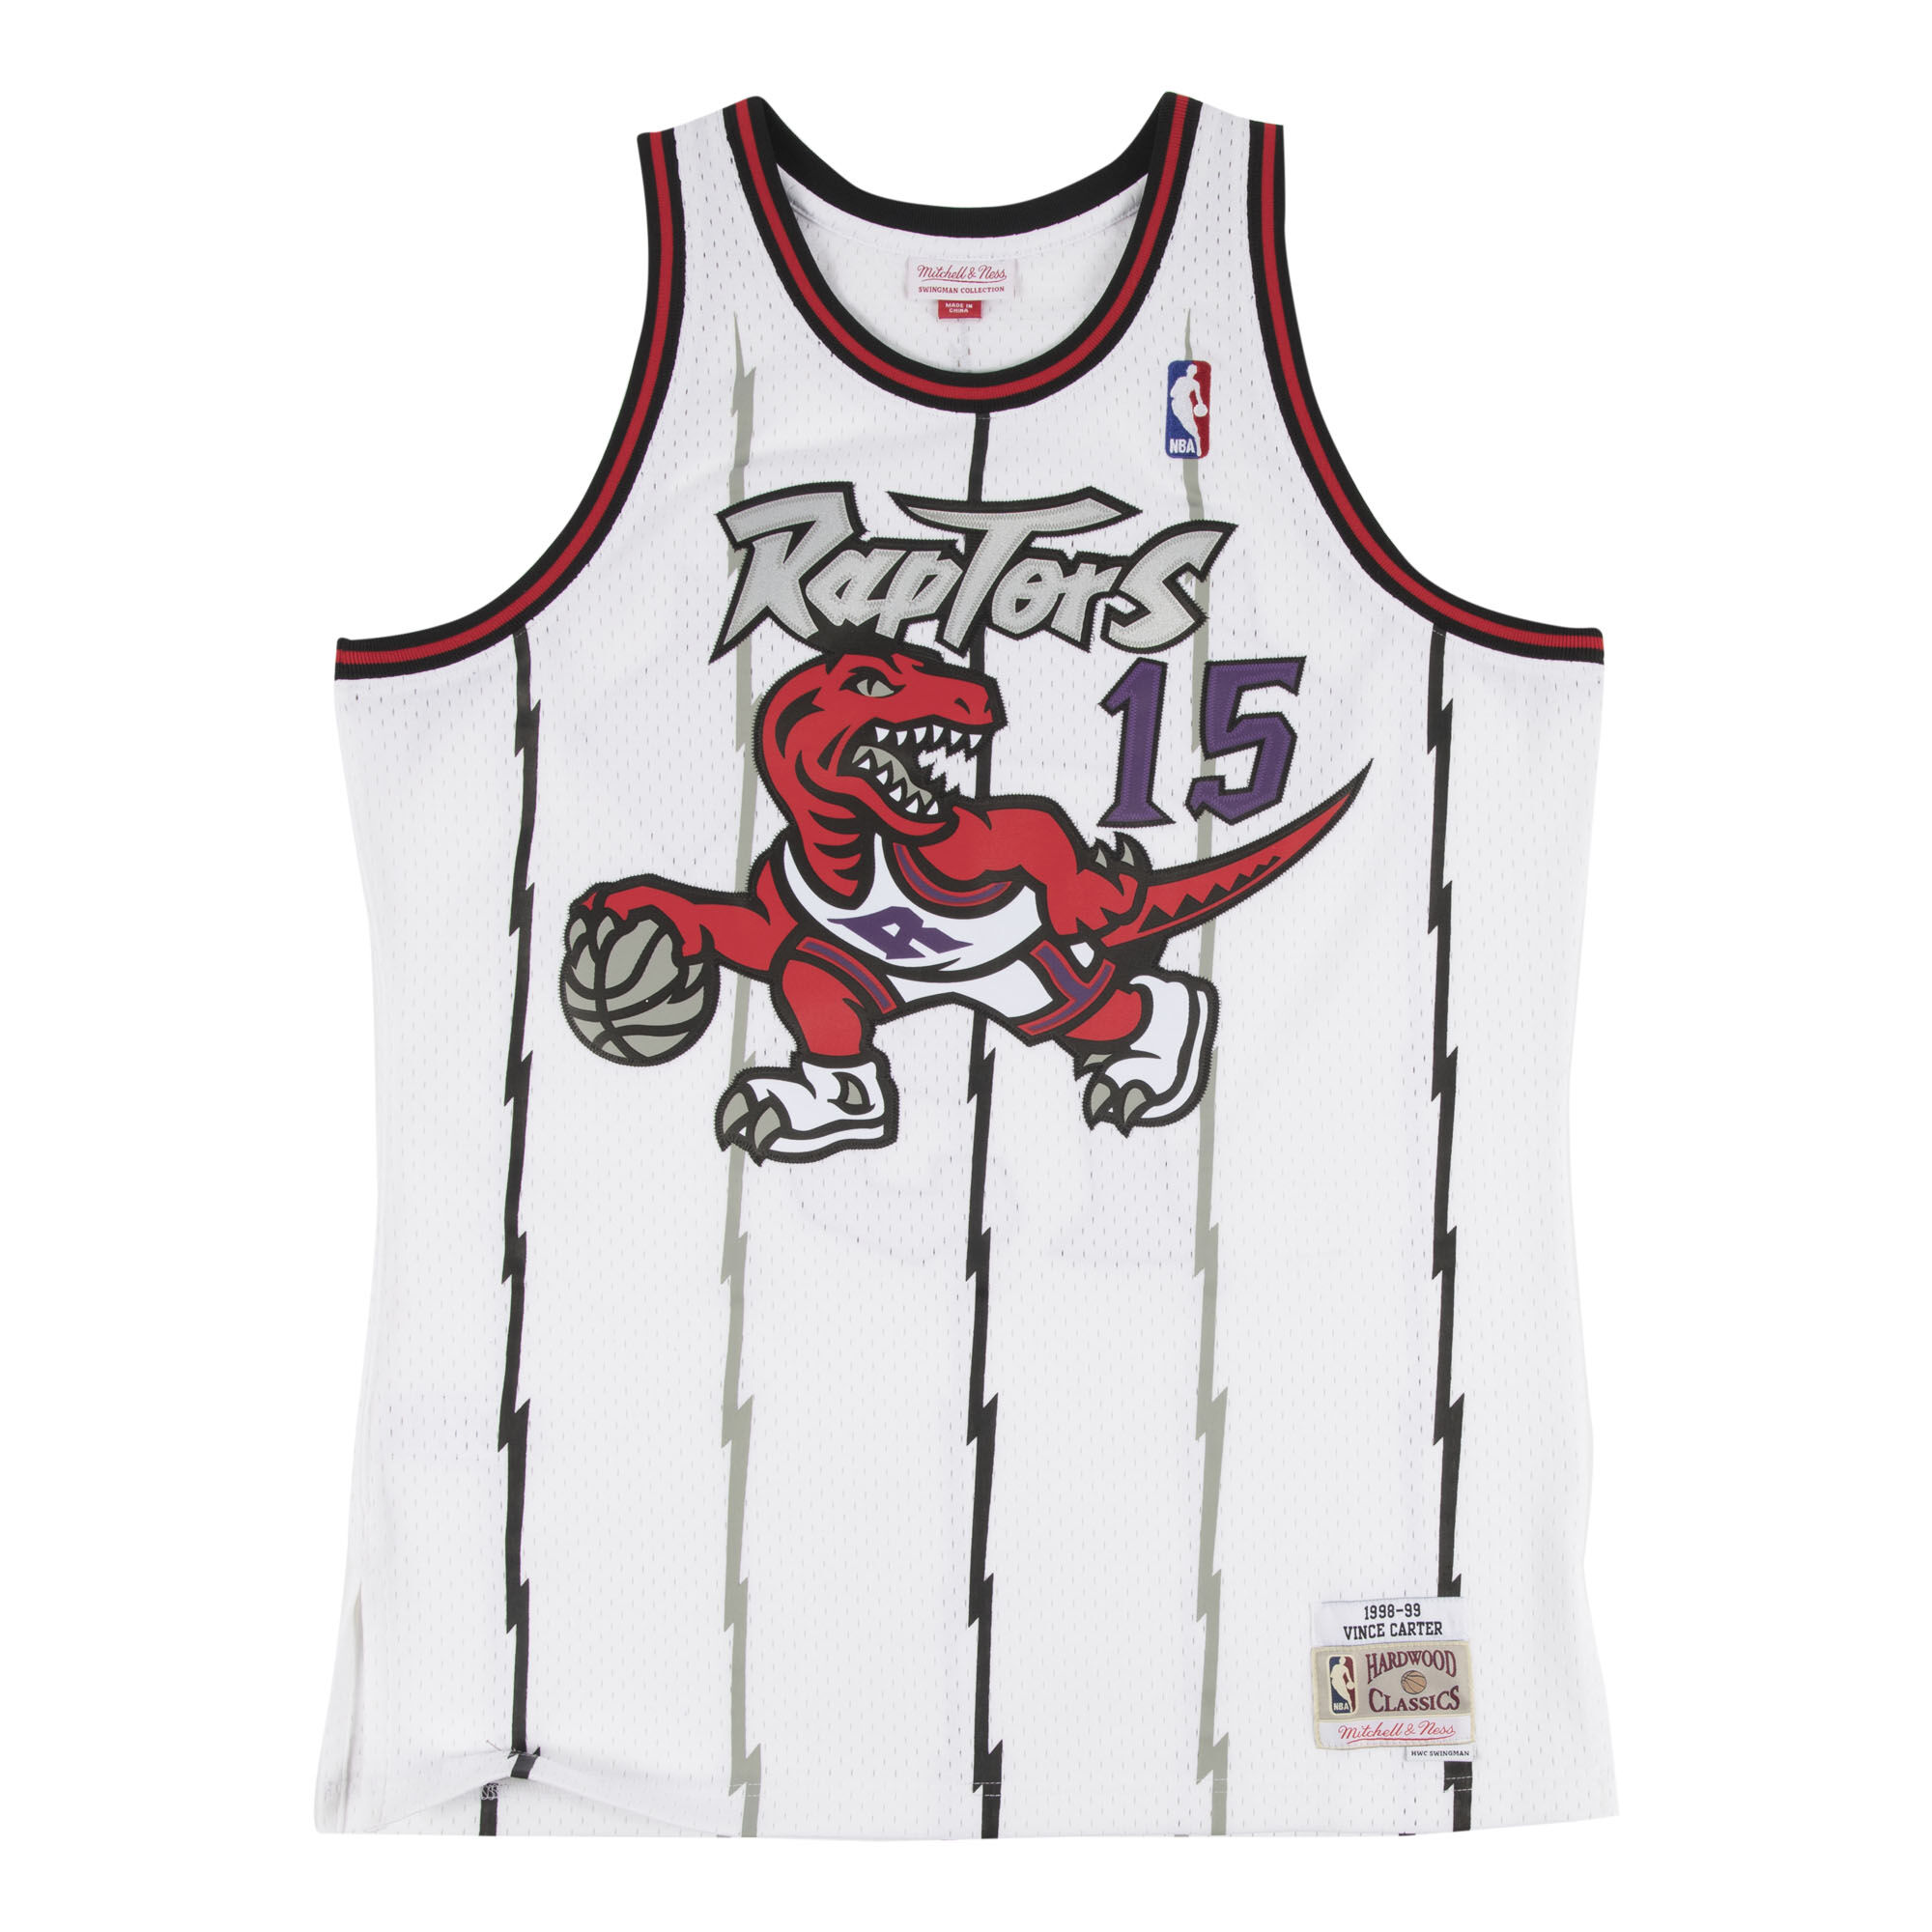 Toronto Raptors Jerseys & Teamwear, NBA Merchandise